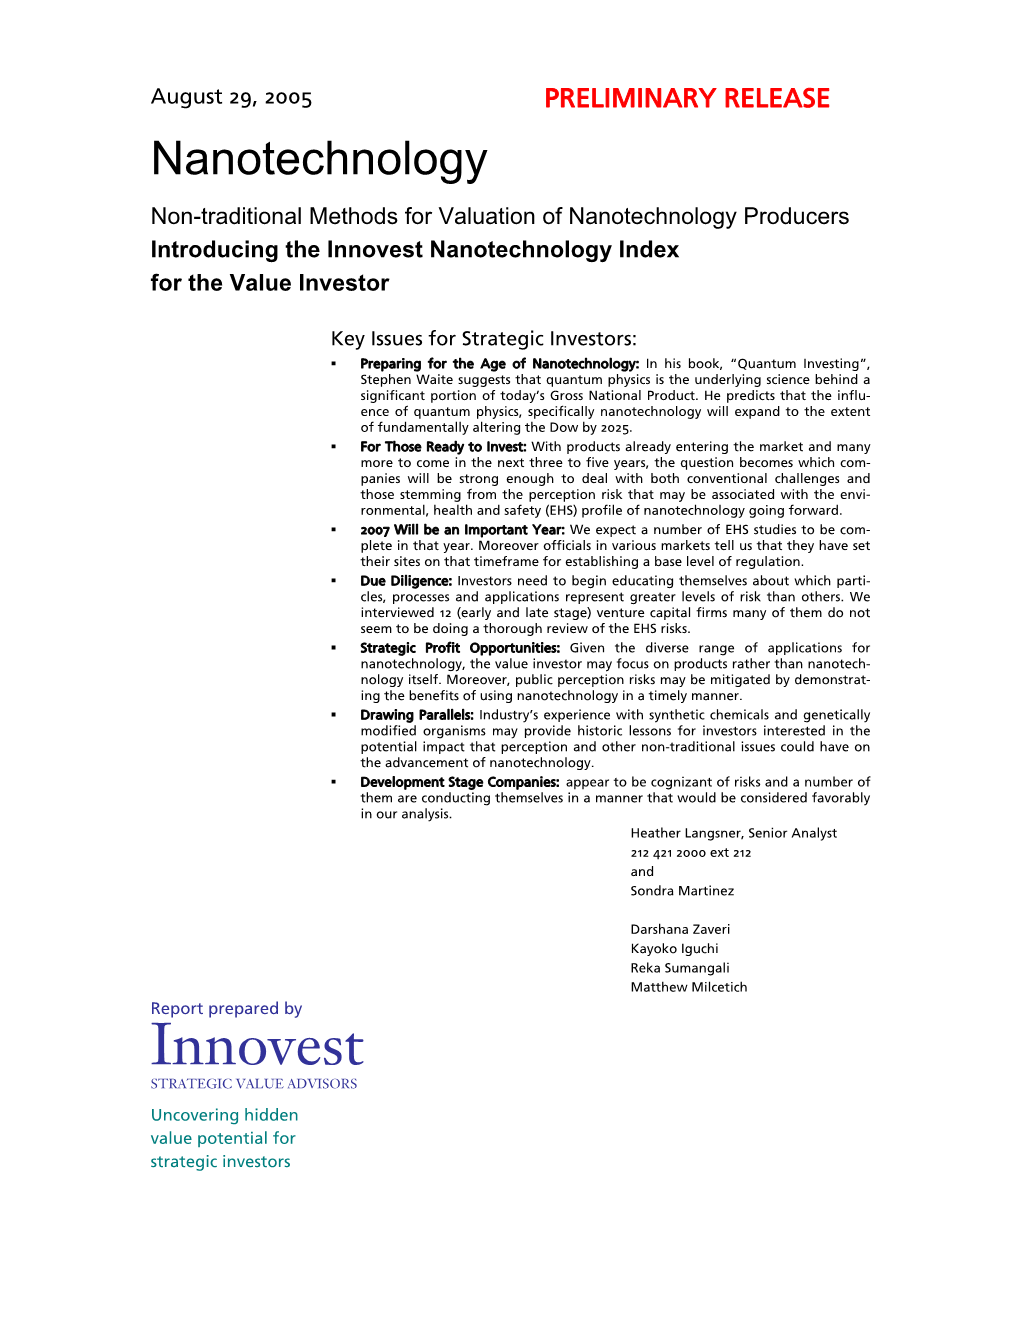 Innovest Nanotechnology Index for the Value Investor